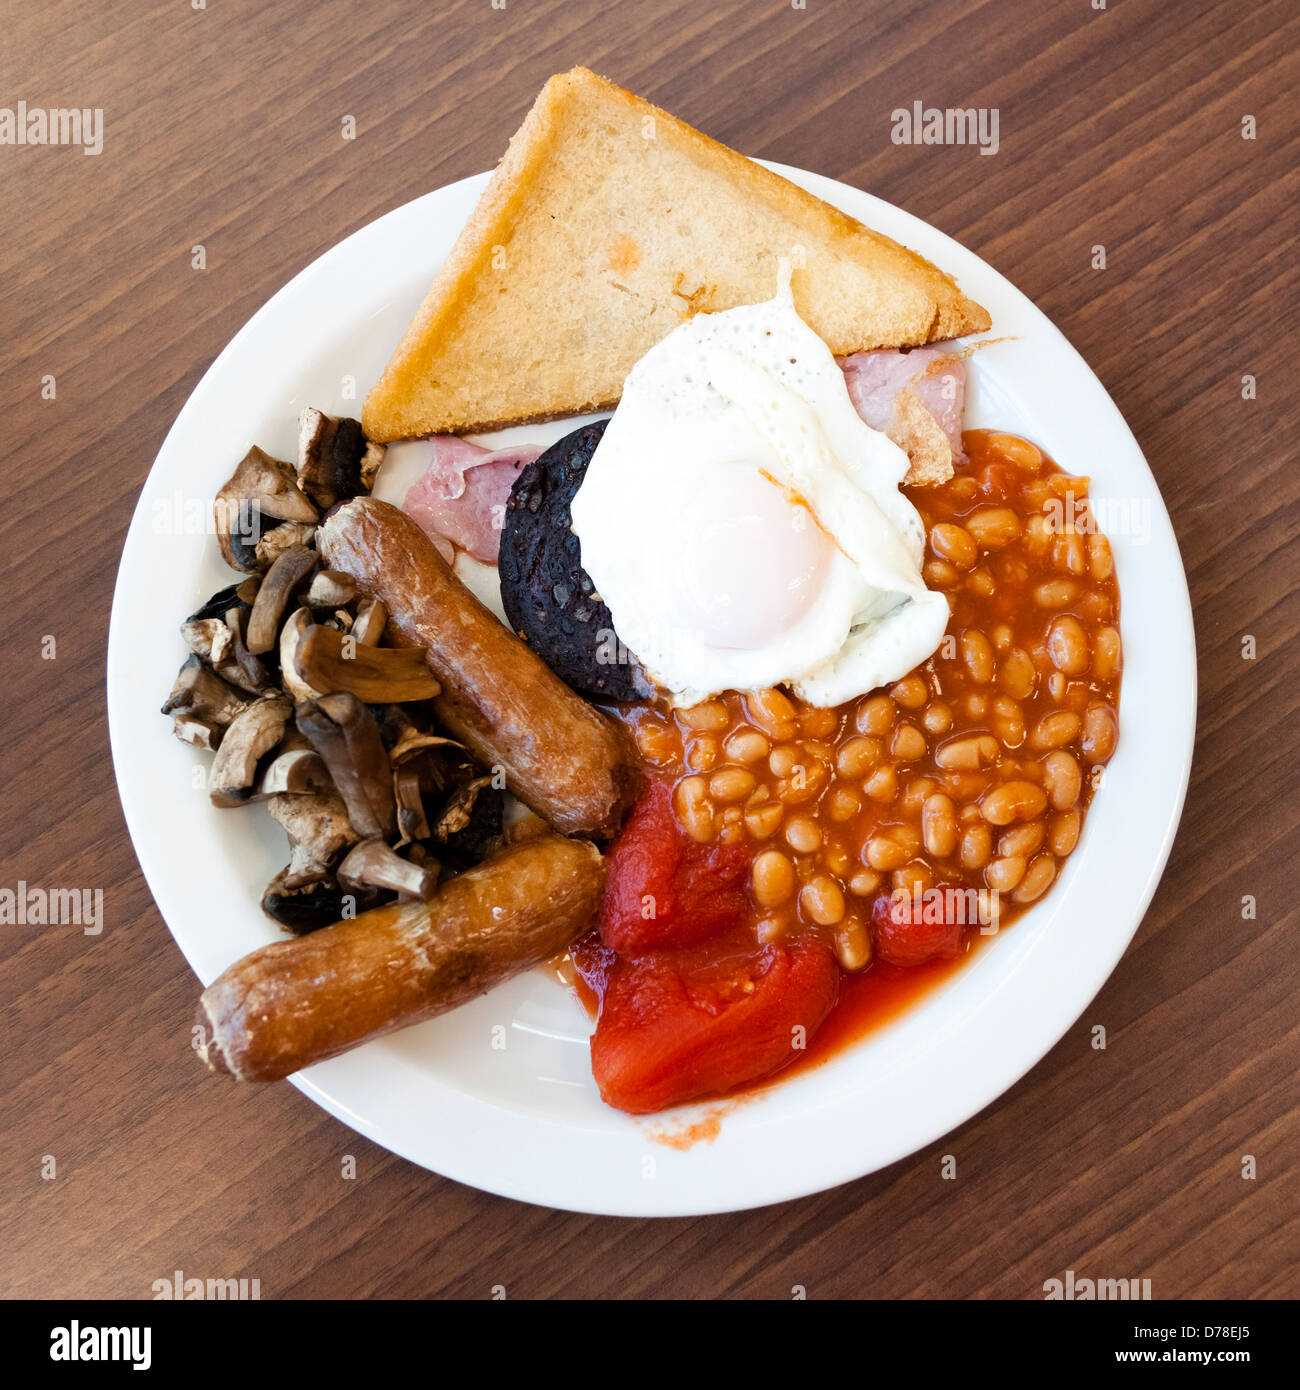 Desayuno inglés completo, con morcilla freír en un café. Desayuno comida frita sobrecarga de Reino Unido. Foto de stock